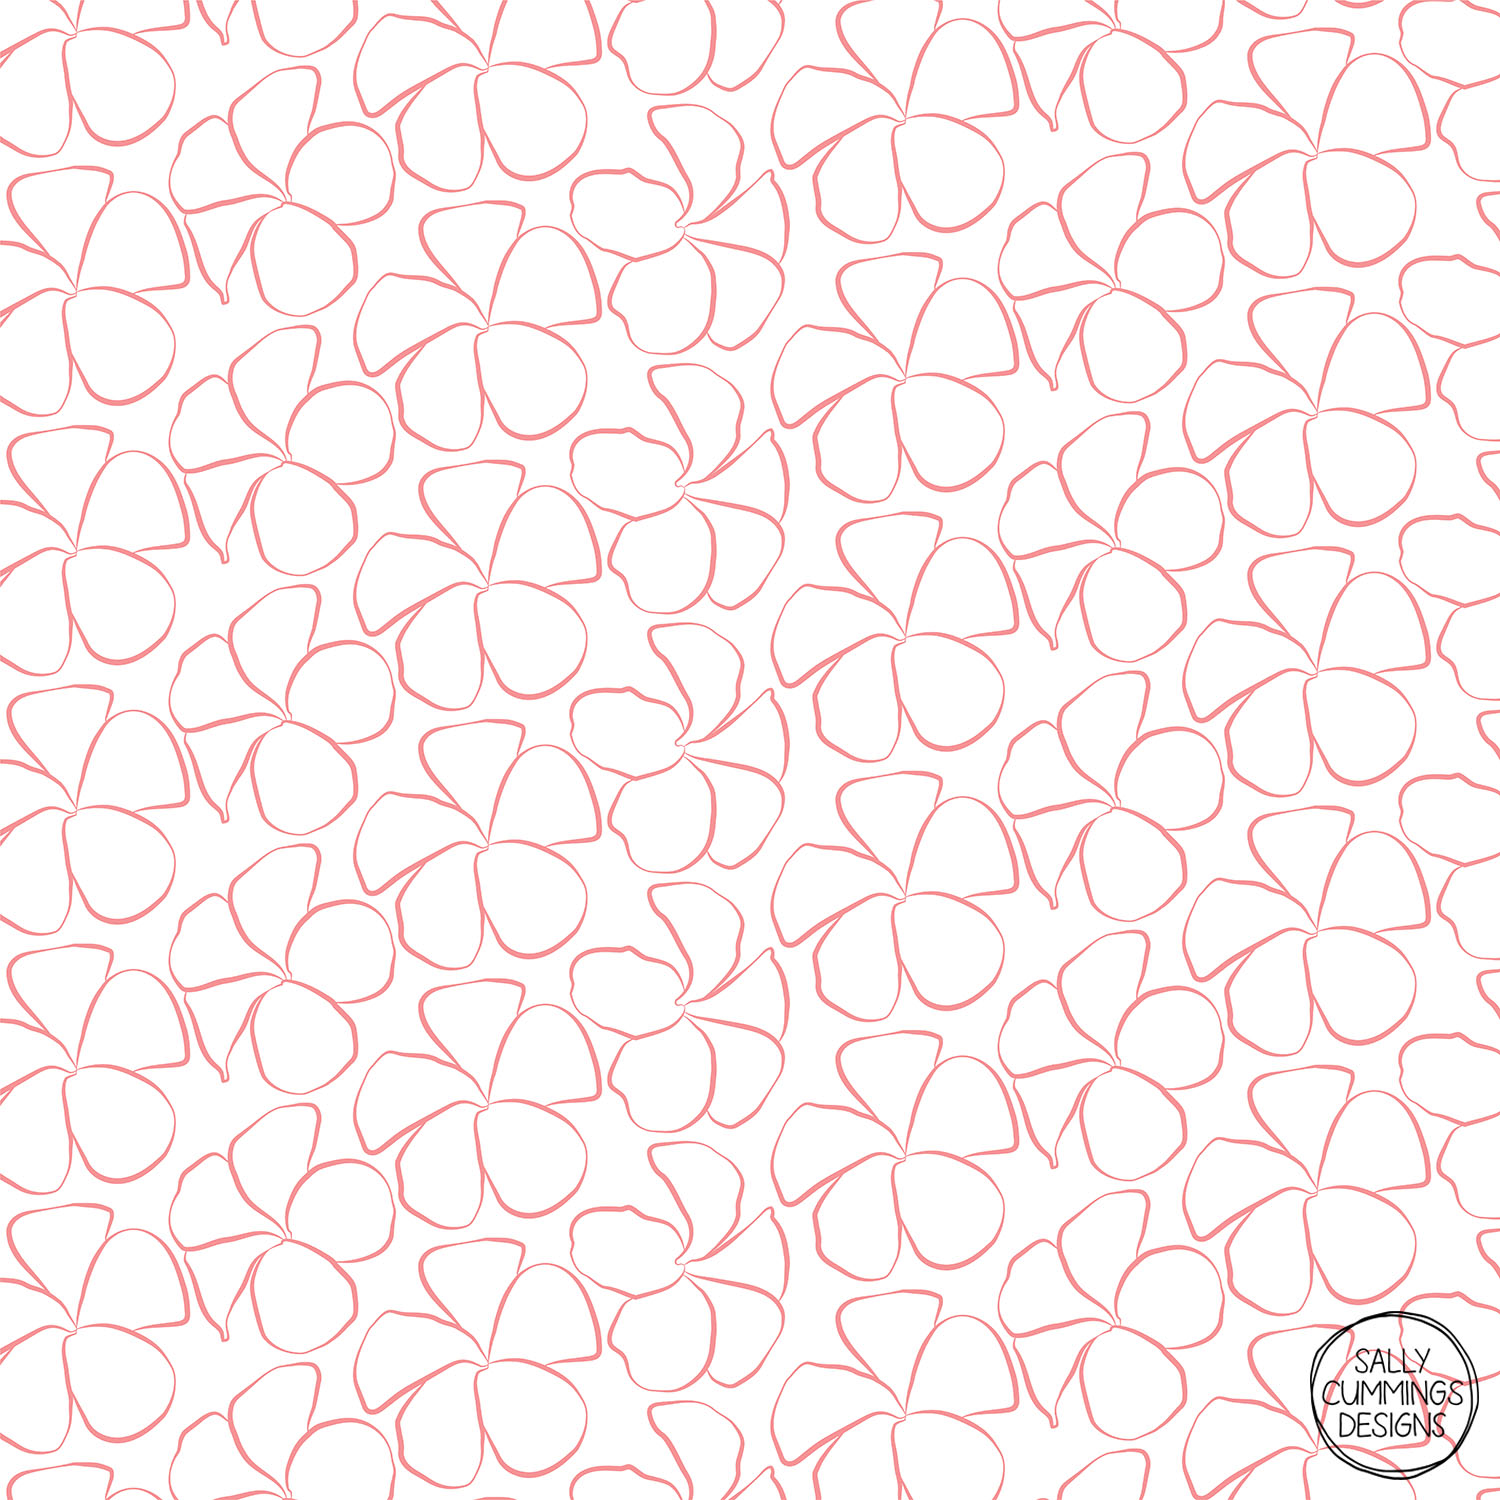 Sally Cummings Designs - Sweet Frangipani (Salmon Pink on White)